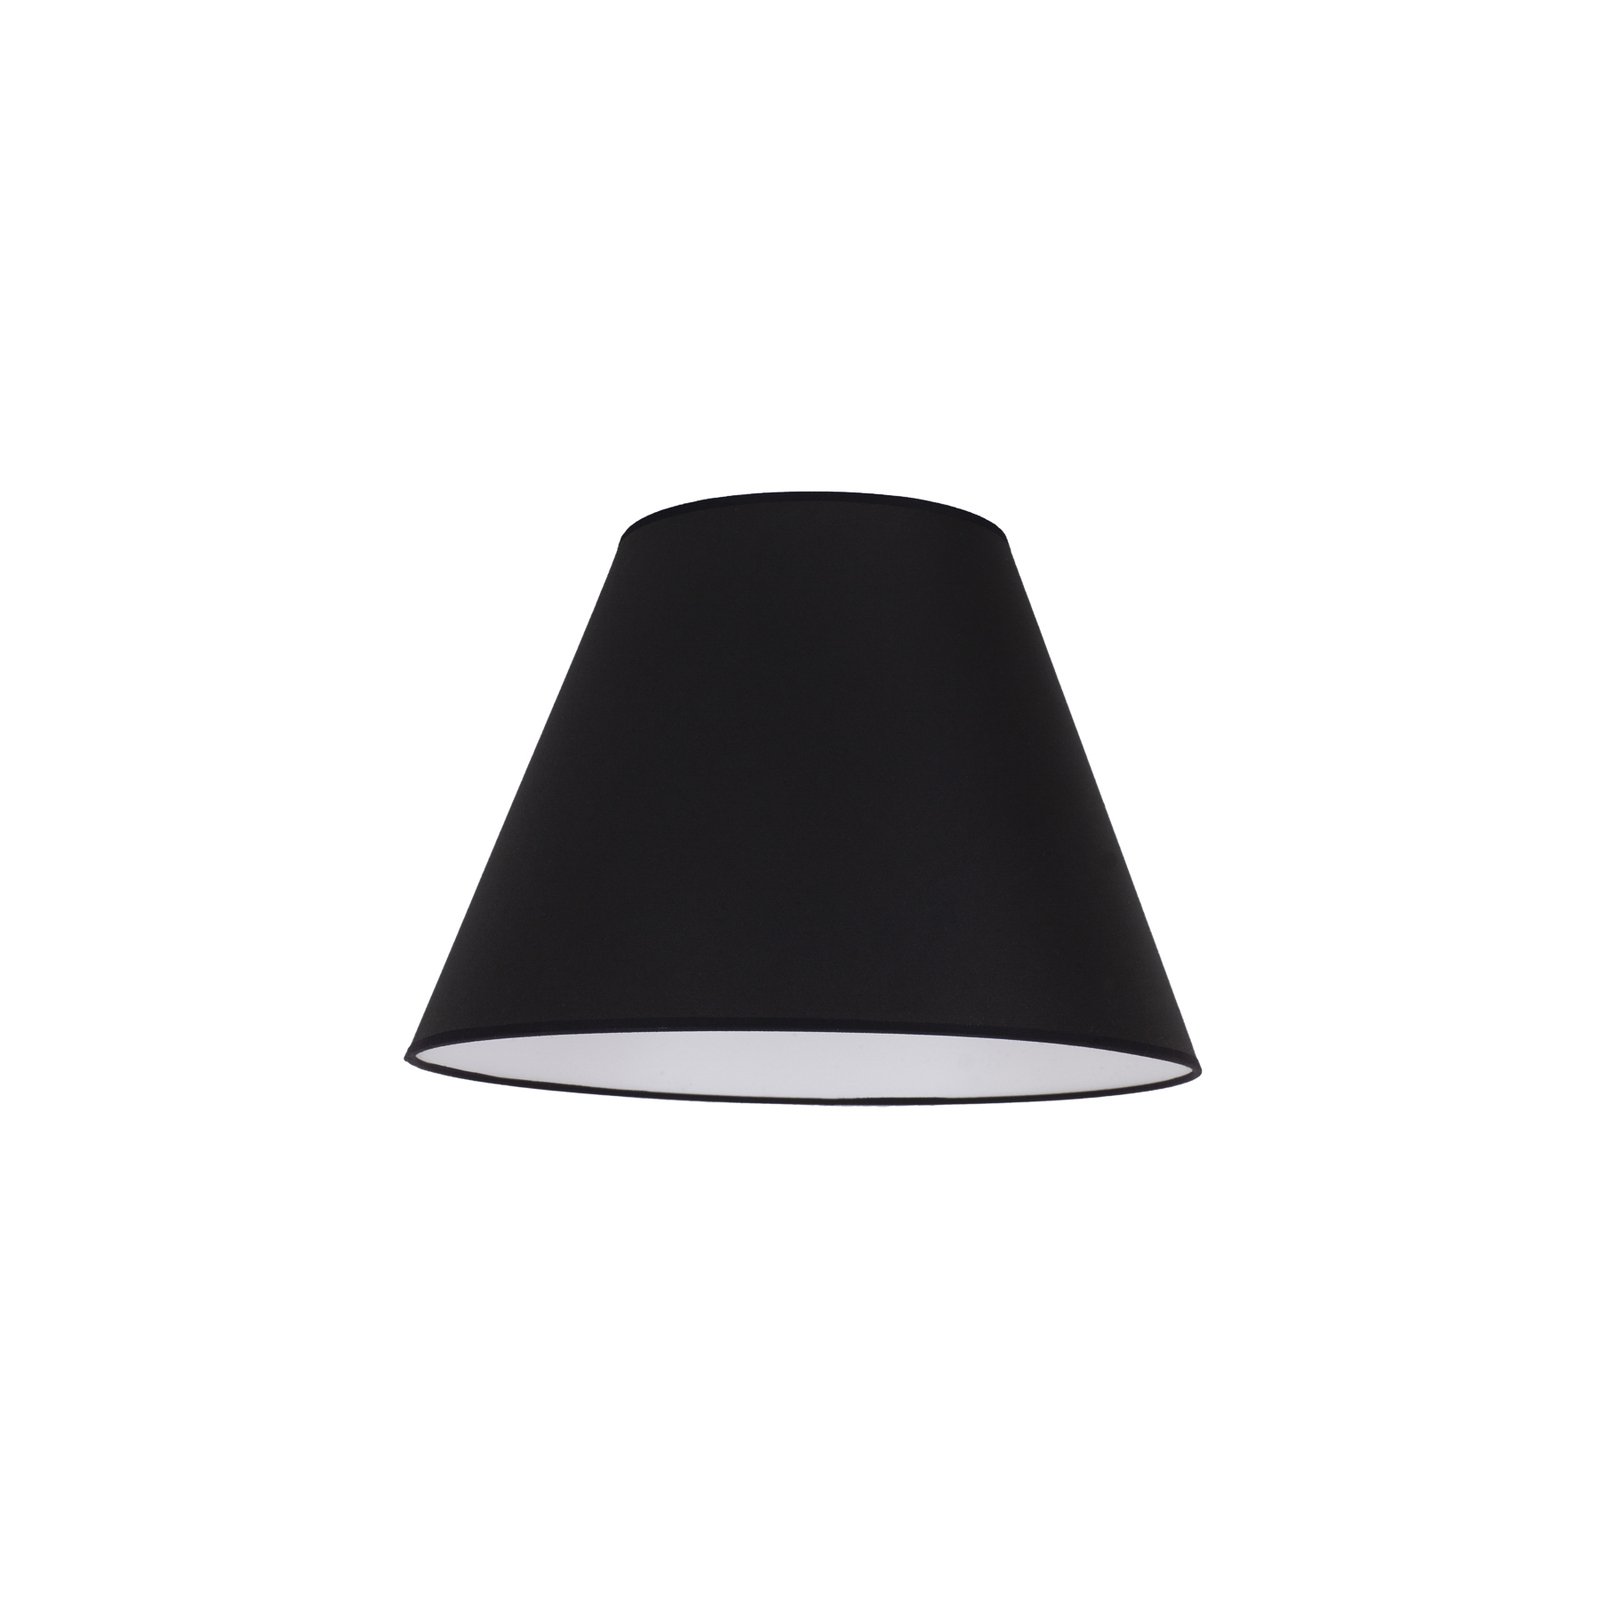 Lampenschirm Sofia Höhe 21 cm, schwarz/weiß